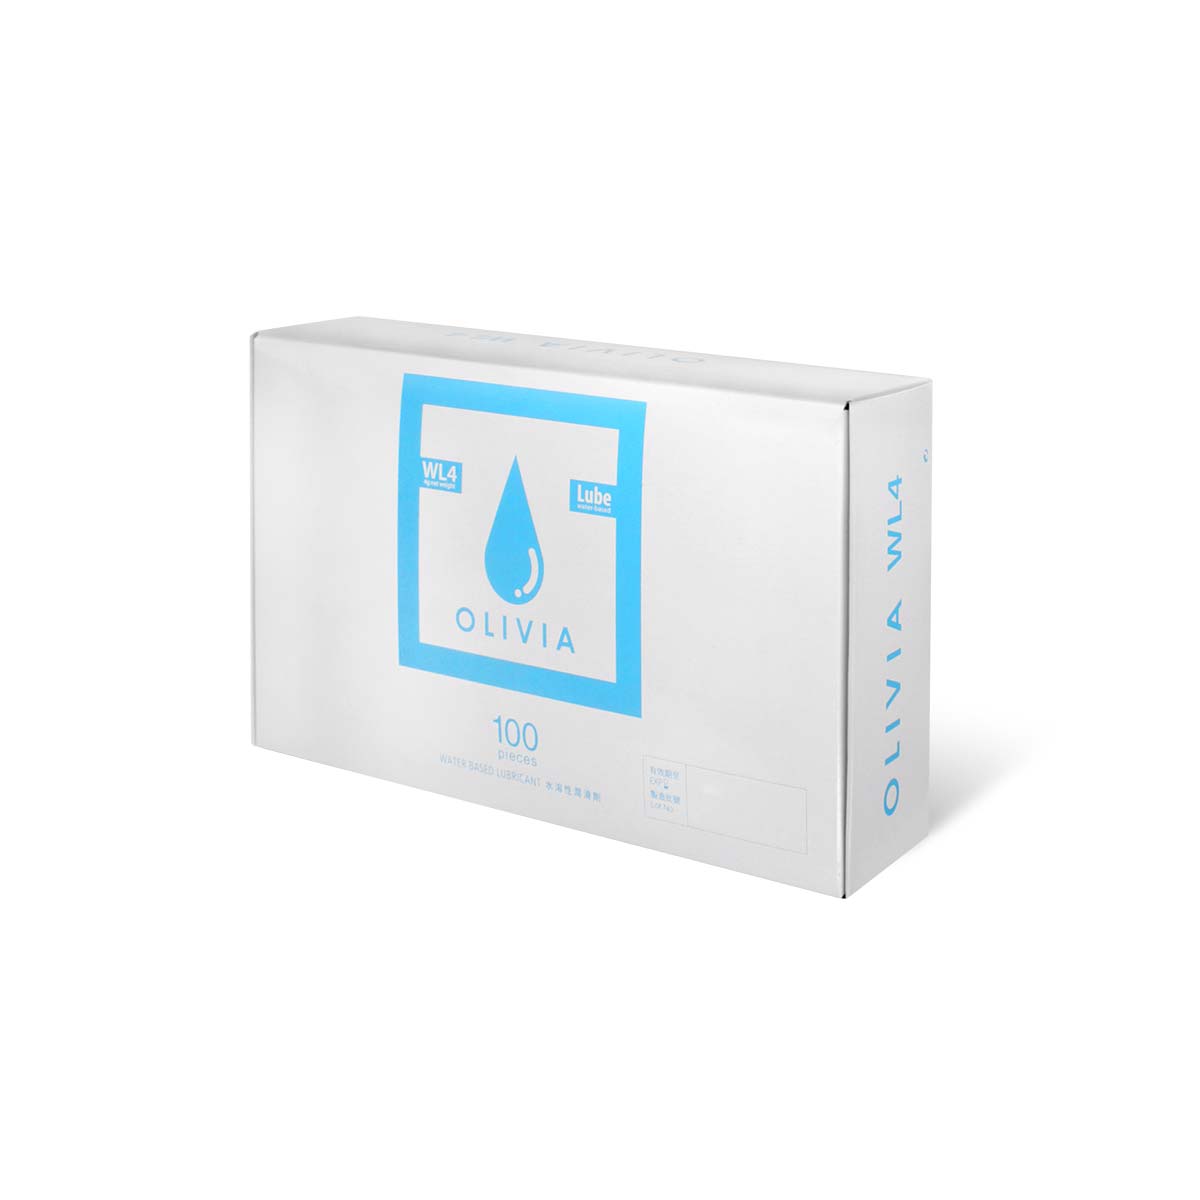 奥莉维亚 WL4 旅行小包装 100 片装 水基润滑剂 (短效期)-p_1